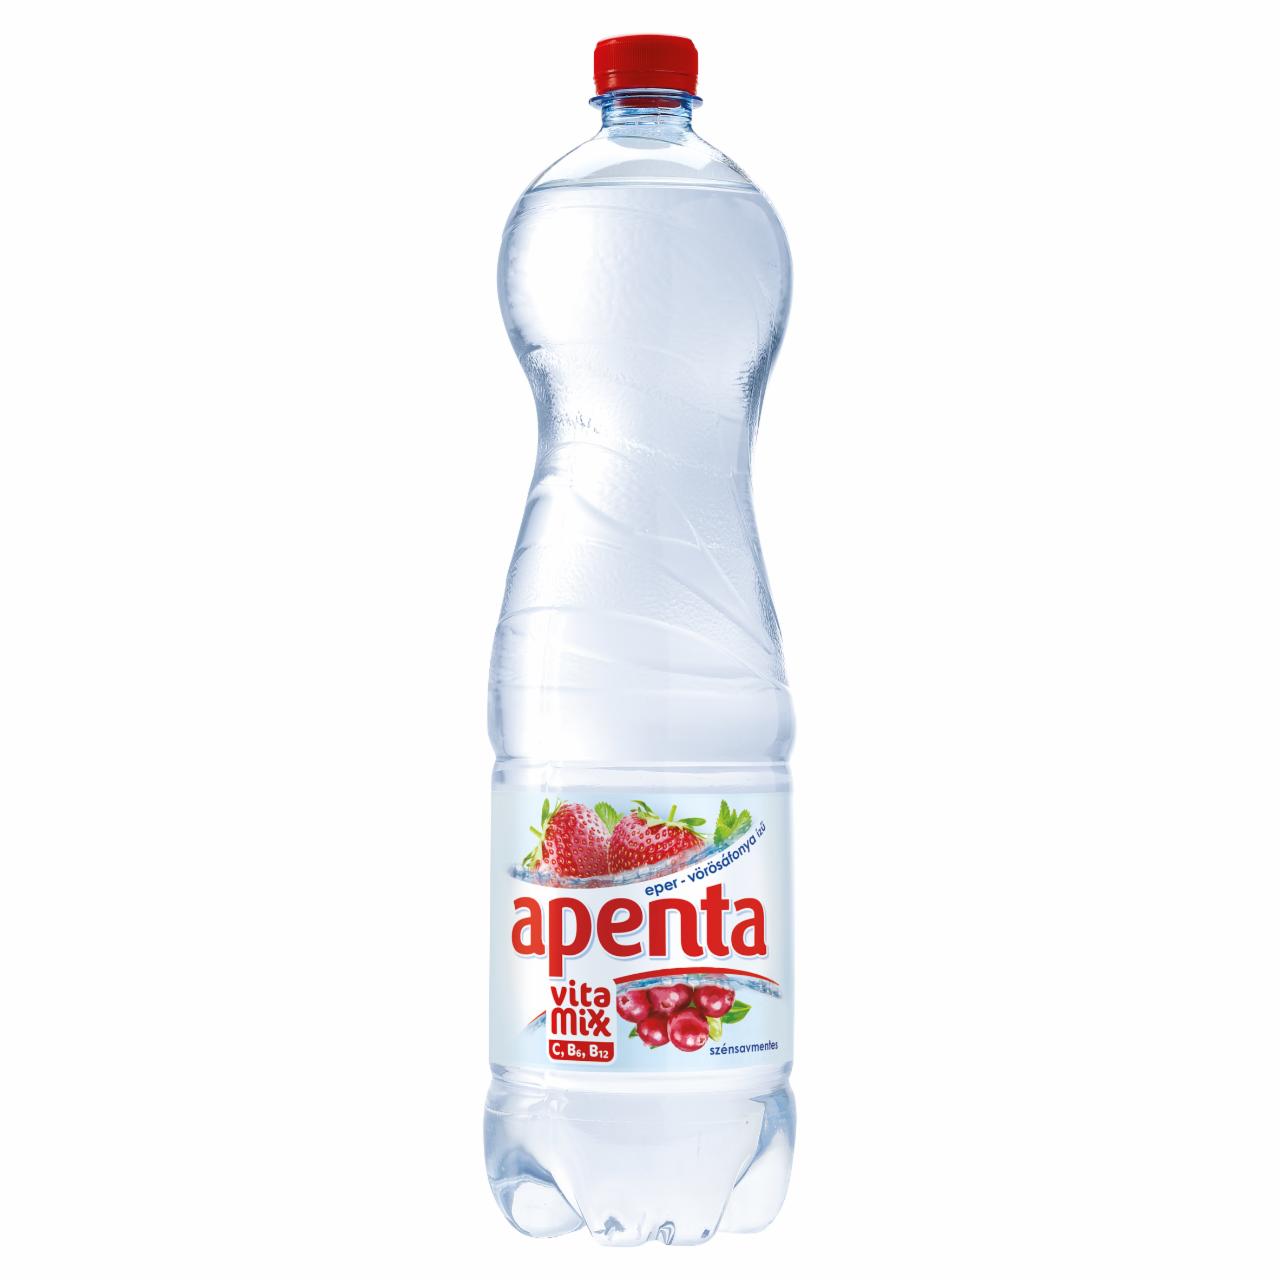 Képek - Apenta Vitamixx eper-vörösáfonya ízű szénsavmentes üdítőital természetes ásványvízzel 1,5 l